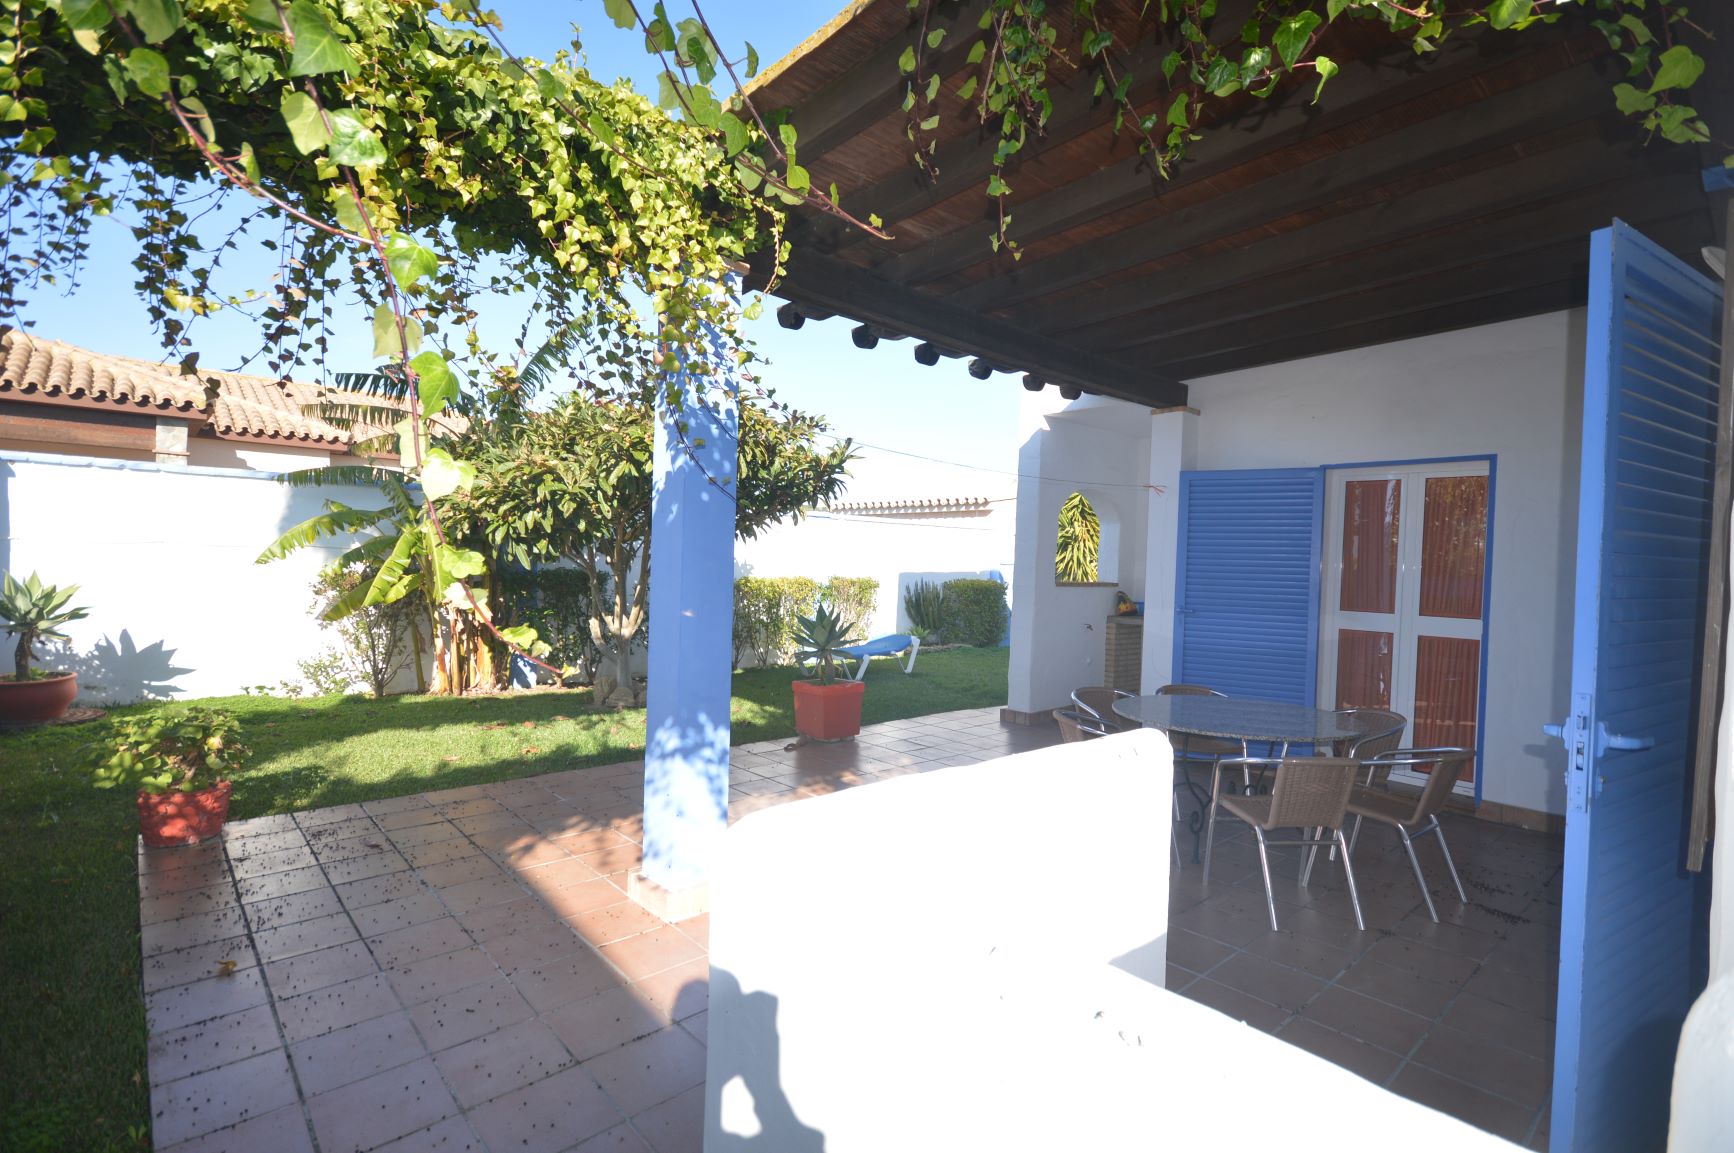 Complejo rural El Arroyo Casa 4| Casa rural con piscina en pequeño complejo en Conil